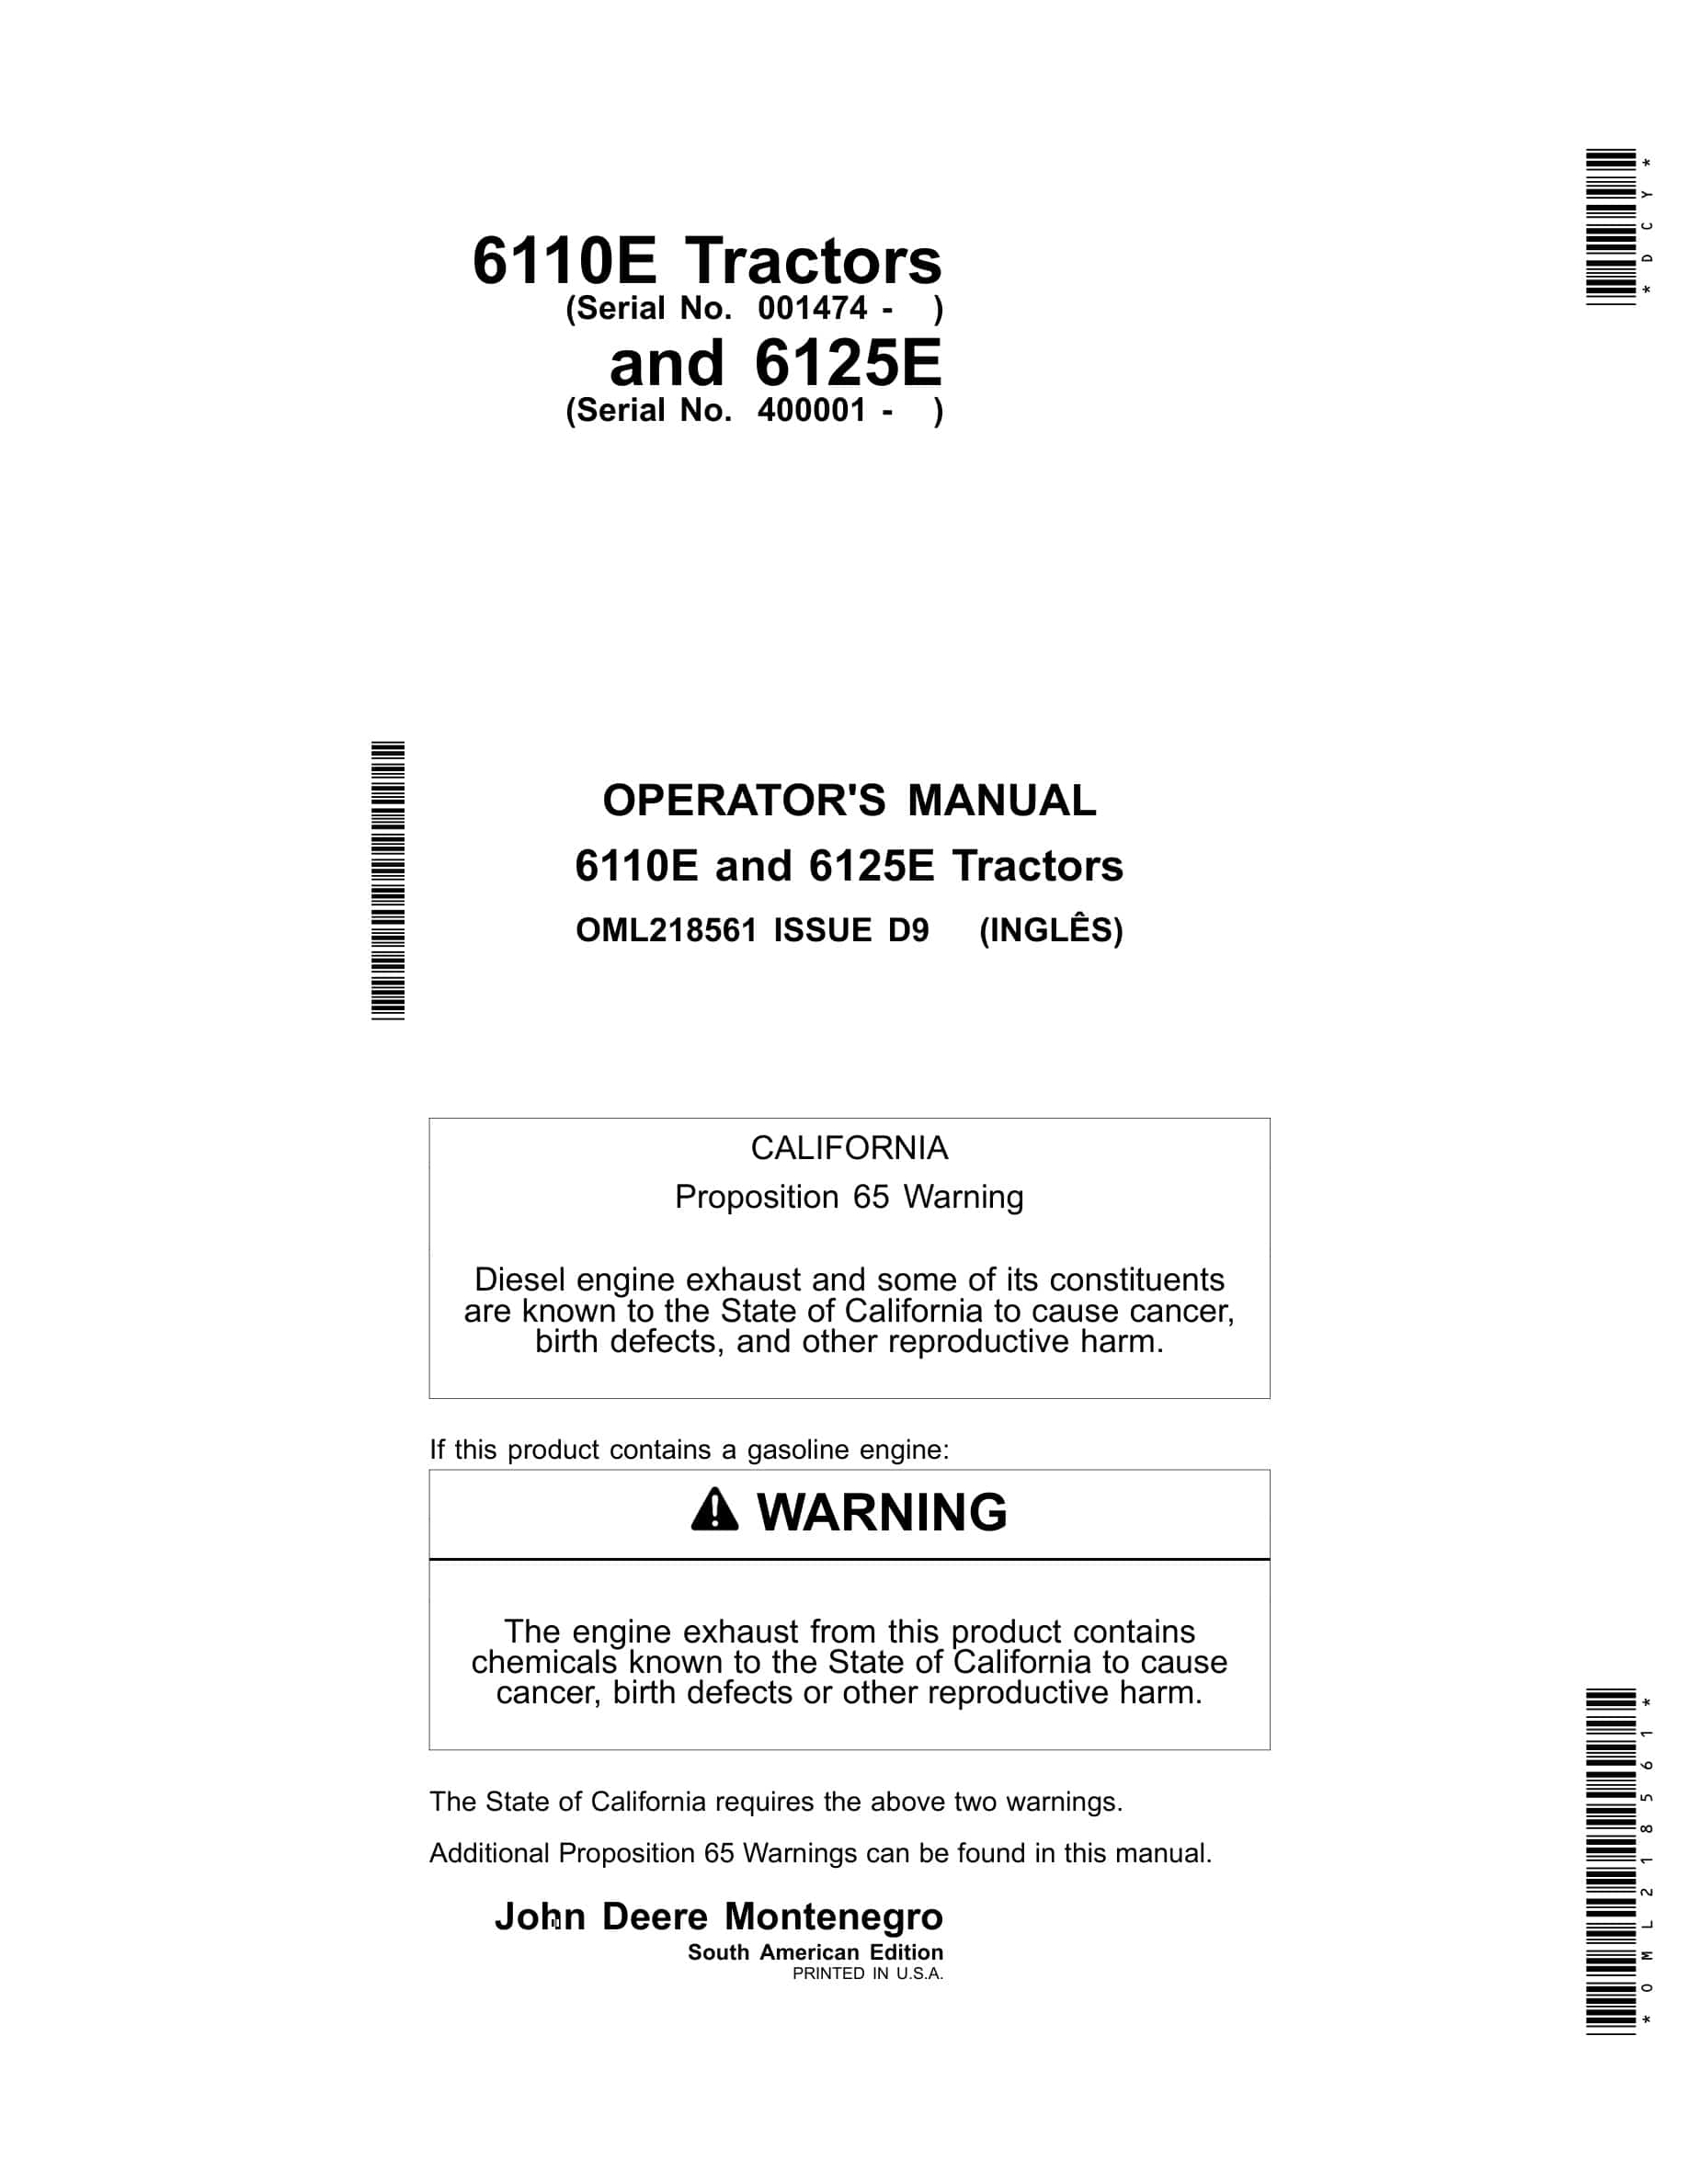 John Deere 6110e And 6125e Tractors Operator Manuals OML218561-1